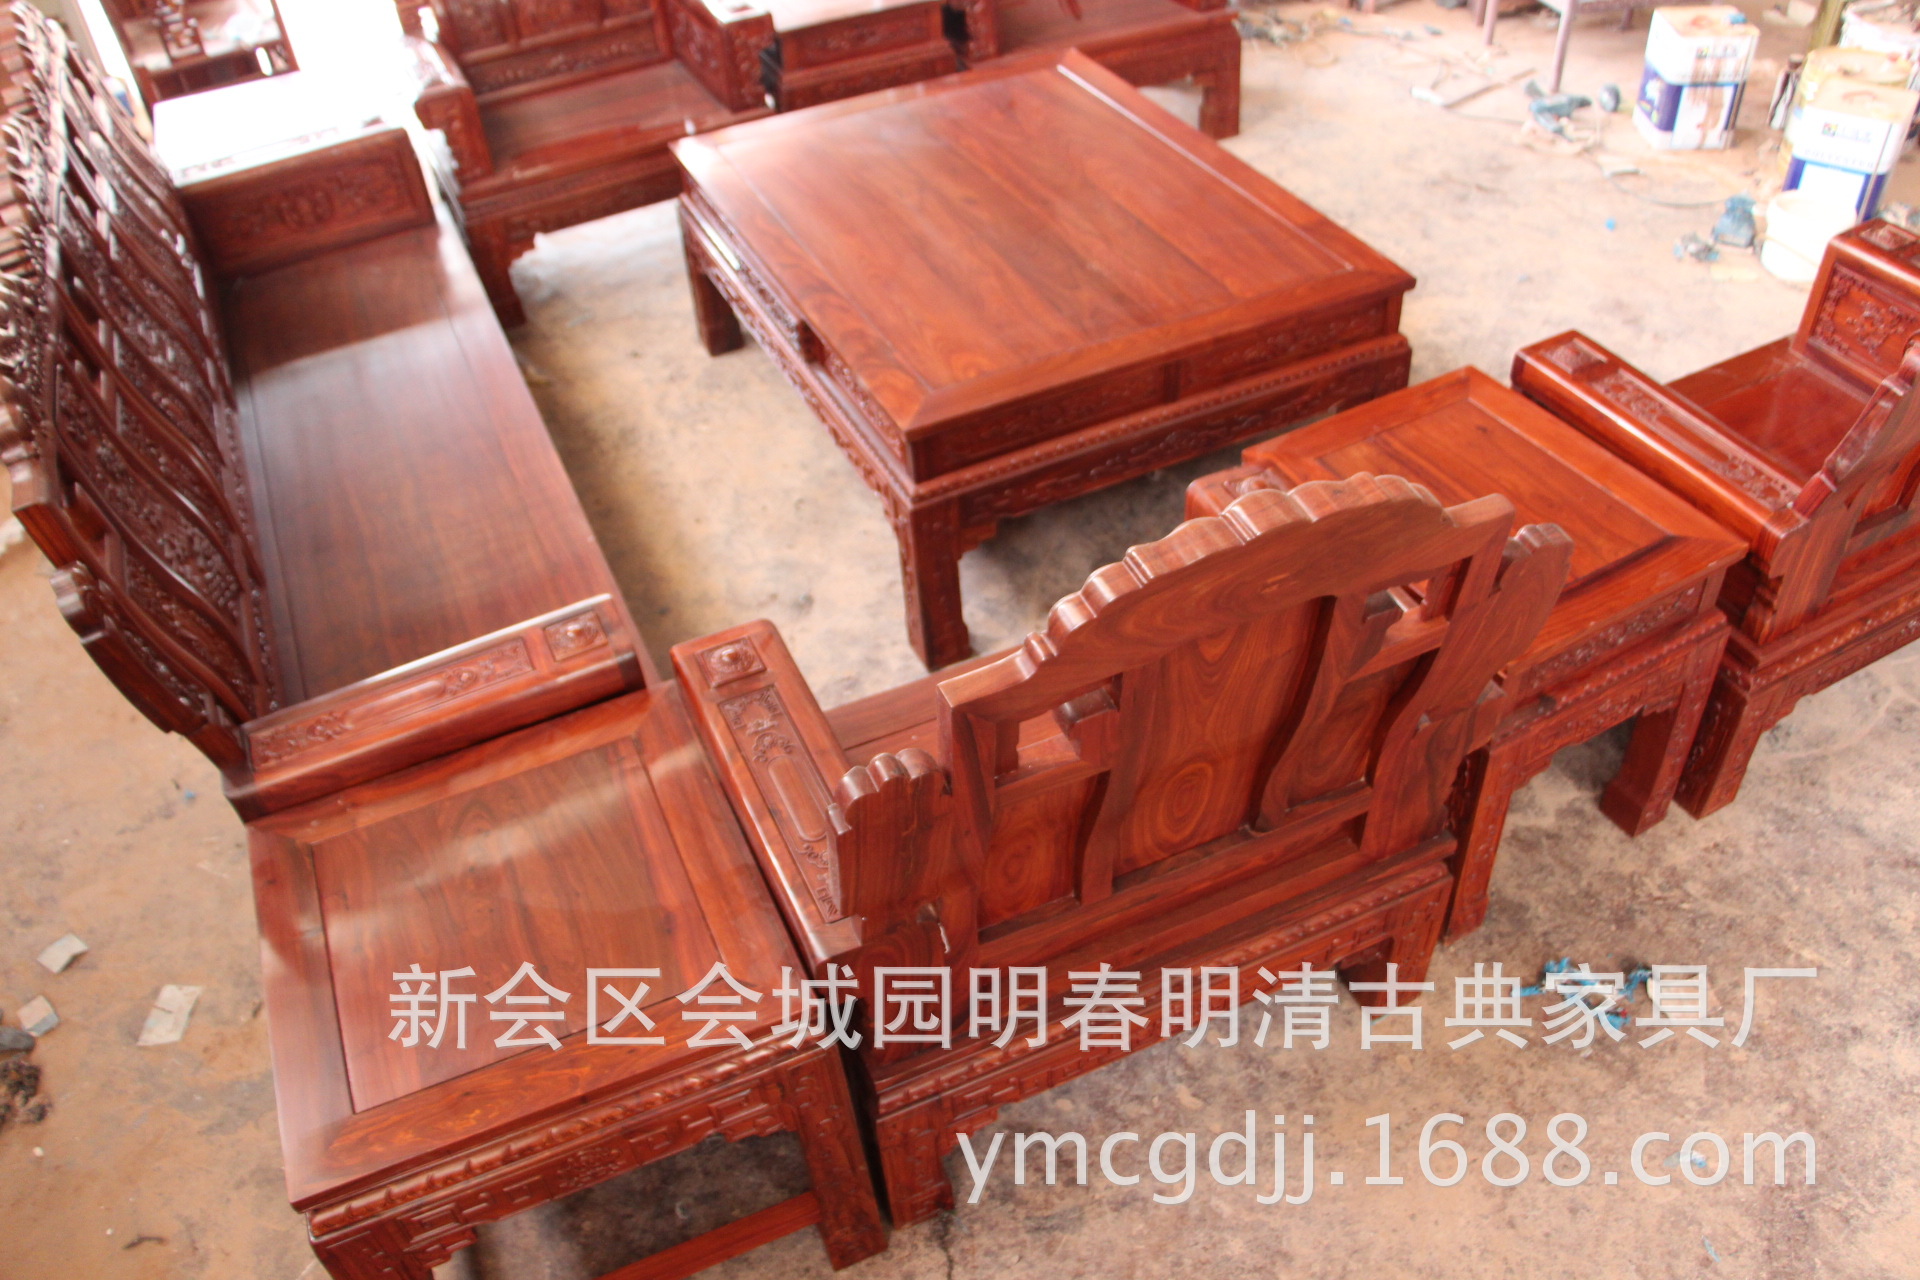 中式红木家具 古典家具 新会古典家具 小叶红檀